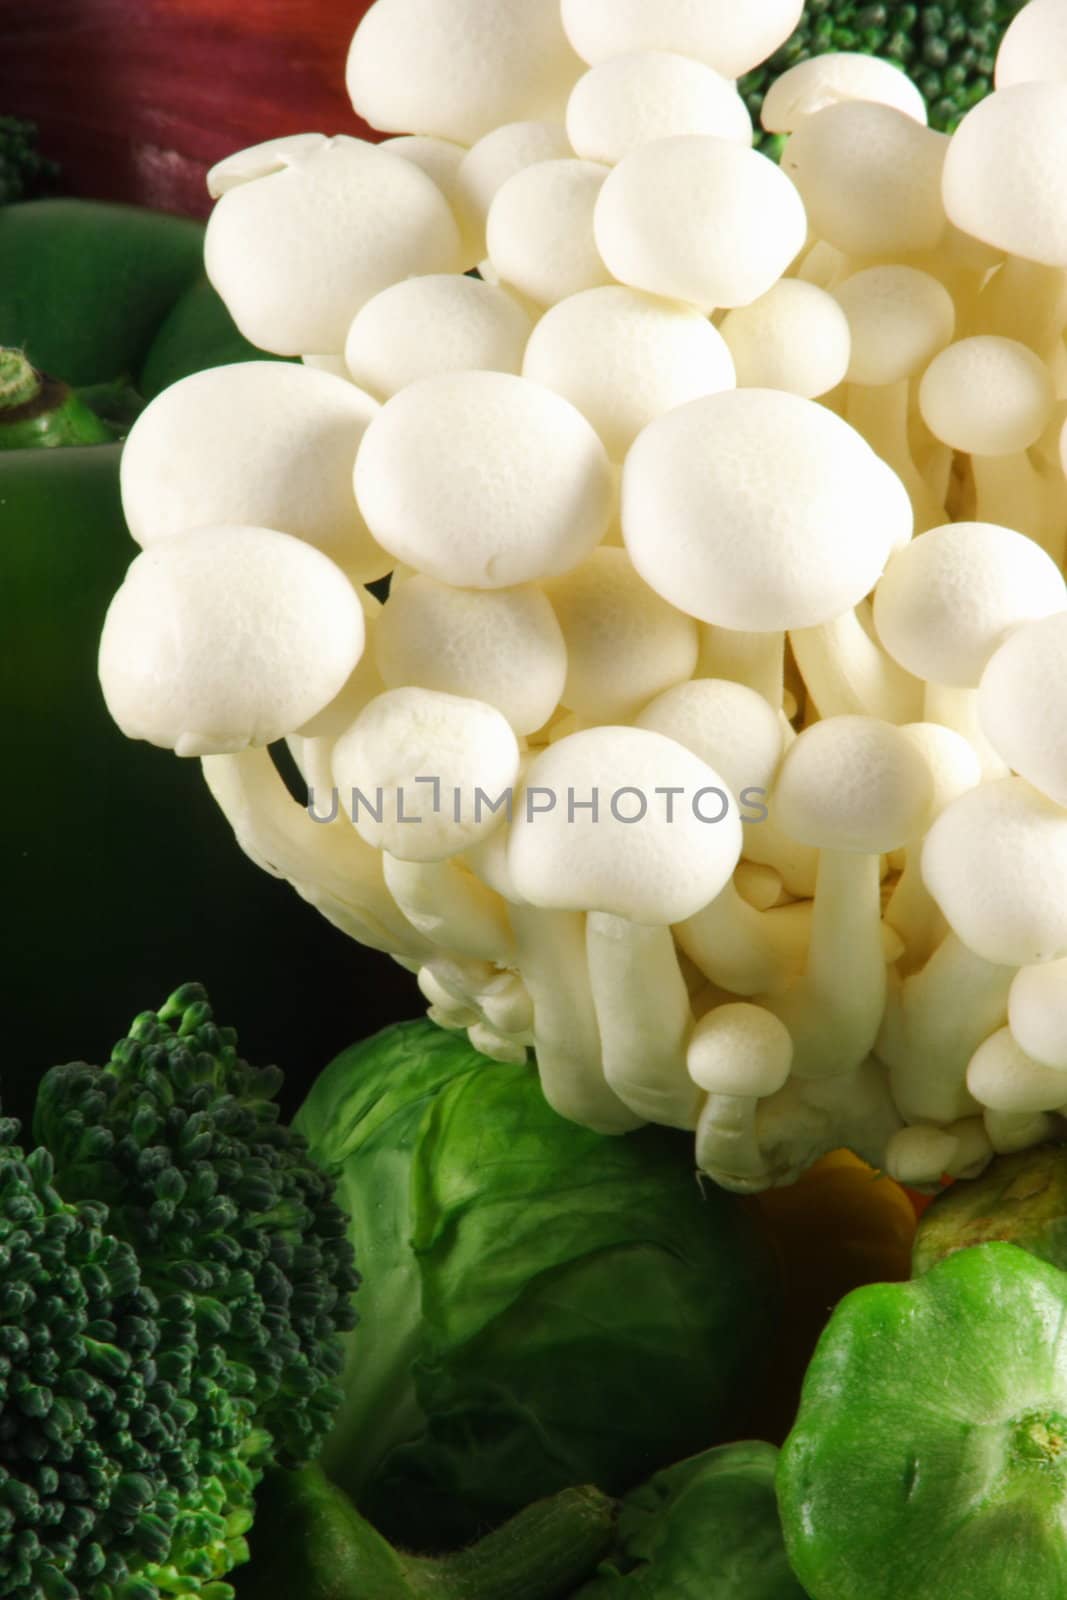 gourmet mushrooms  by tacar